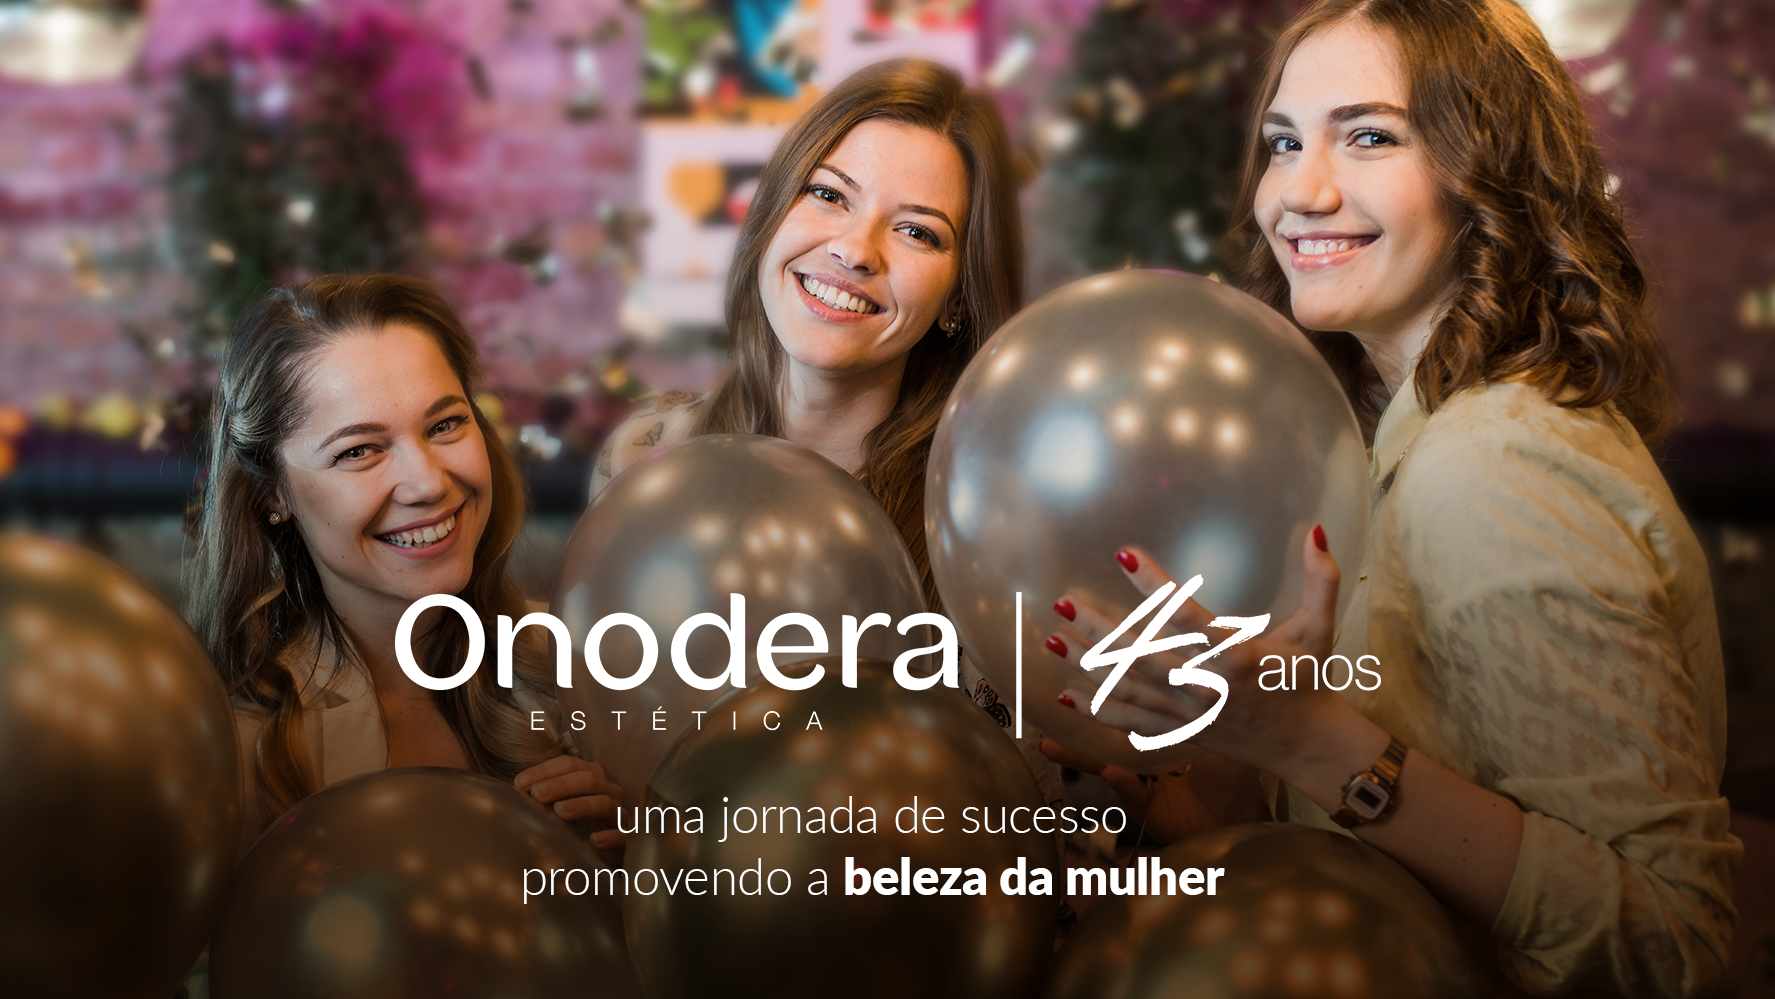 Celebrando 43 anos de Onodera: uma jornada de sucesso promovendo a beleza da mulher